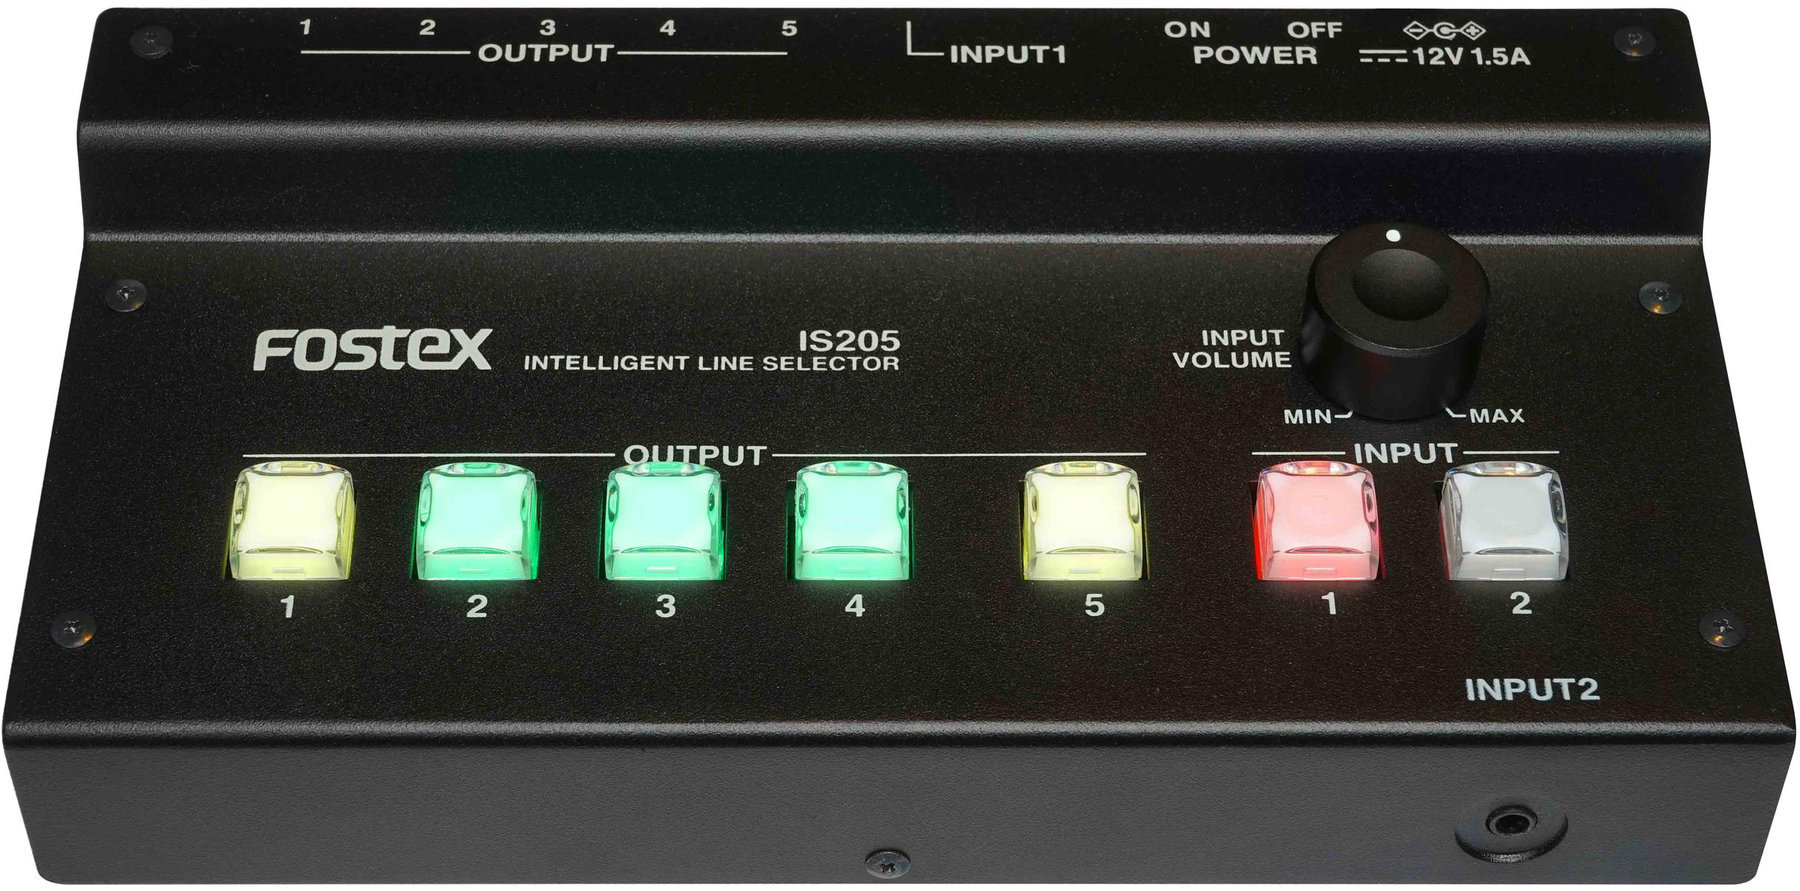 Monitor selector/kontroler głośności Fostex IS205